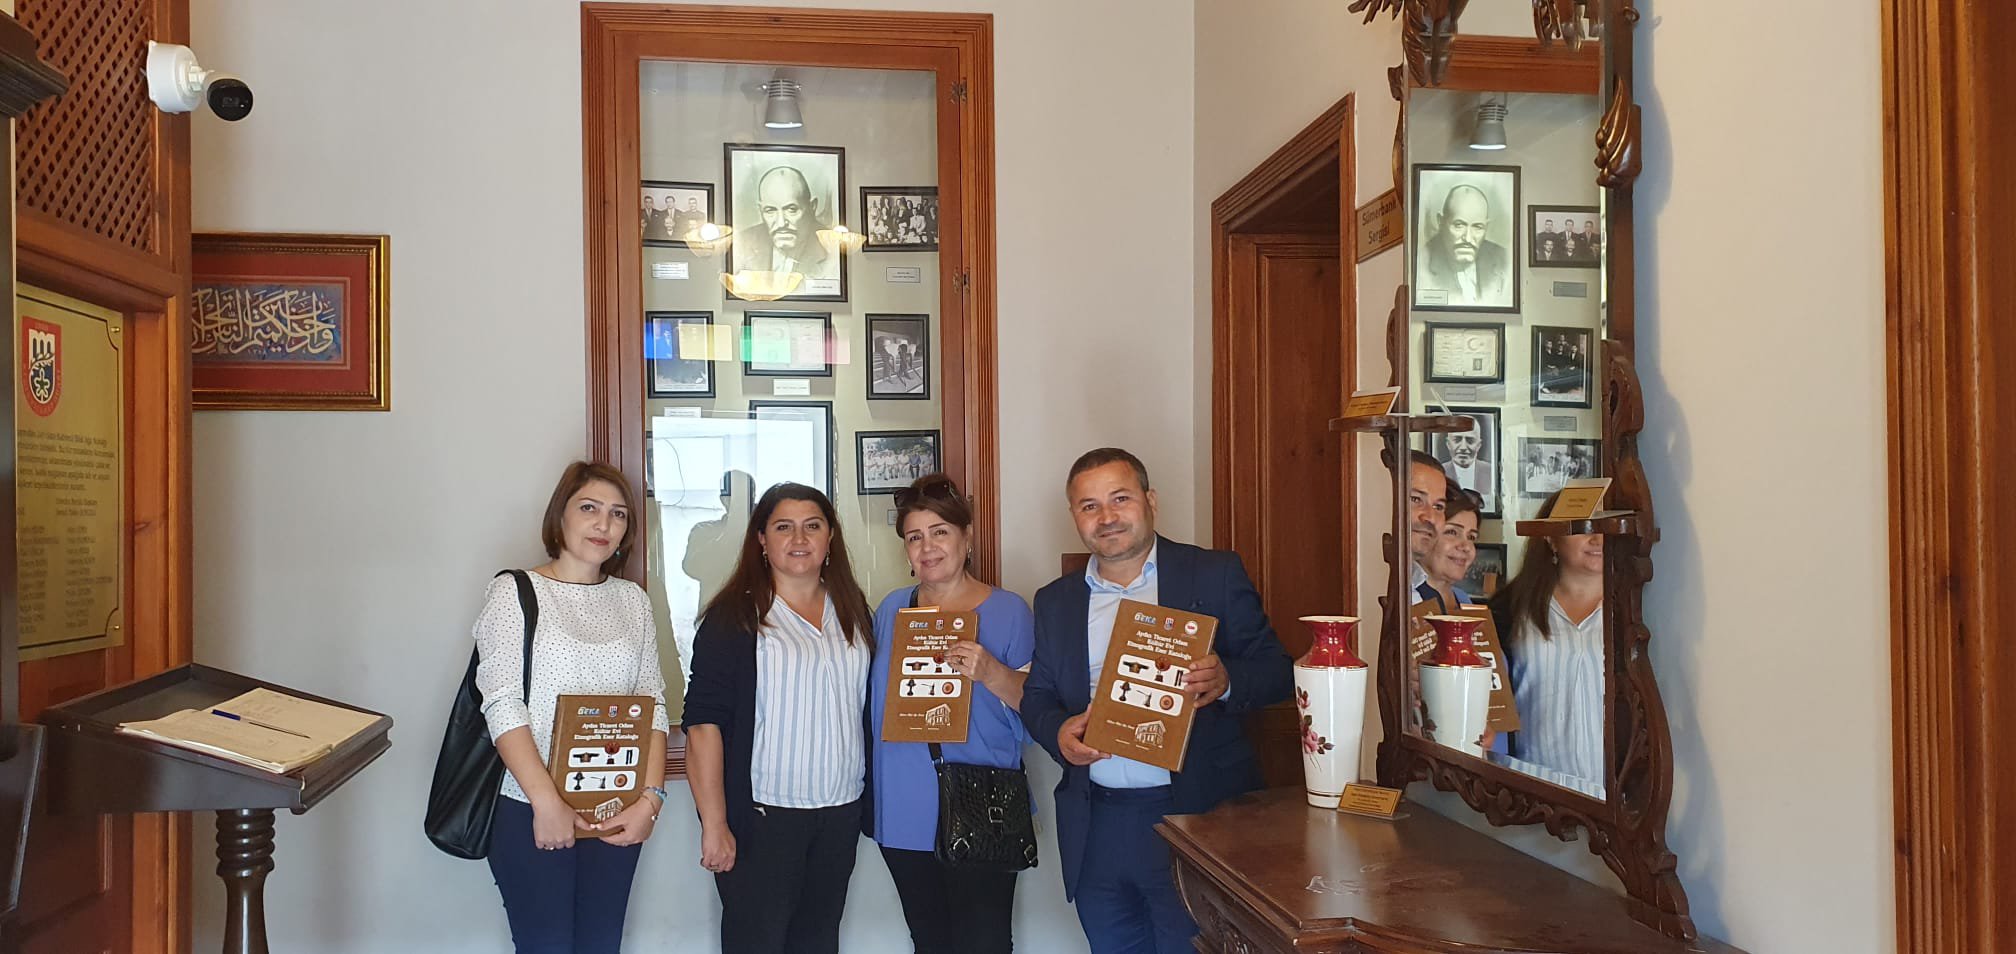 Azerbaycan Gegeli Belediye Başkanı Arkeolog Fariz Halilli, Akademisyen Shehla Halilli ve Habibe Aliyeva AYTO Kültür Evi'ne ziyarette bulundular.